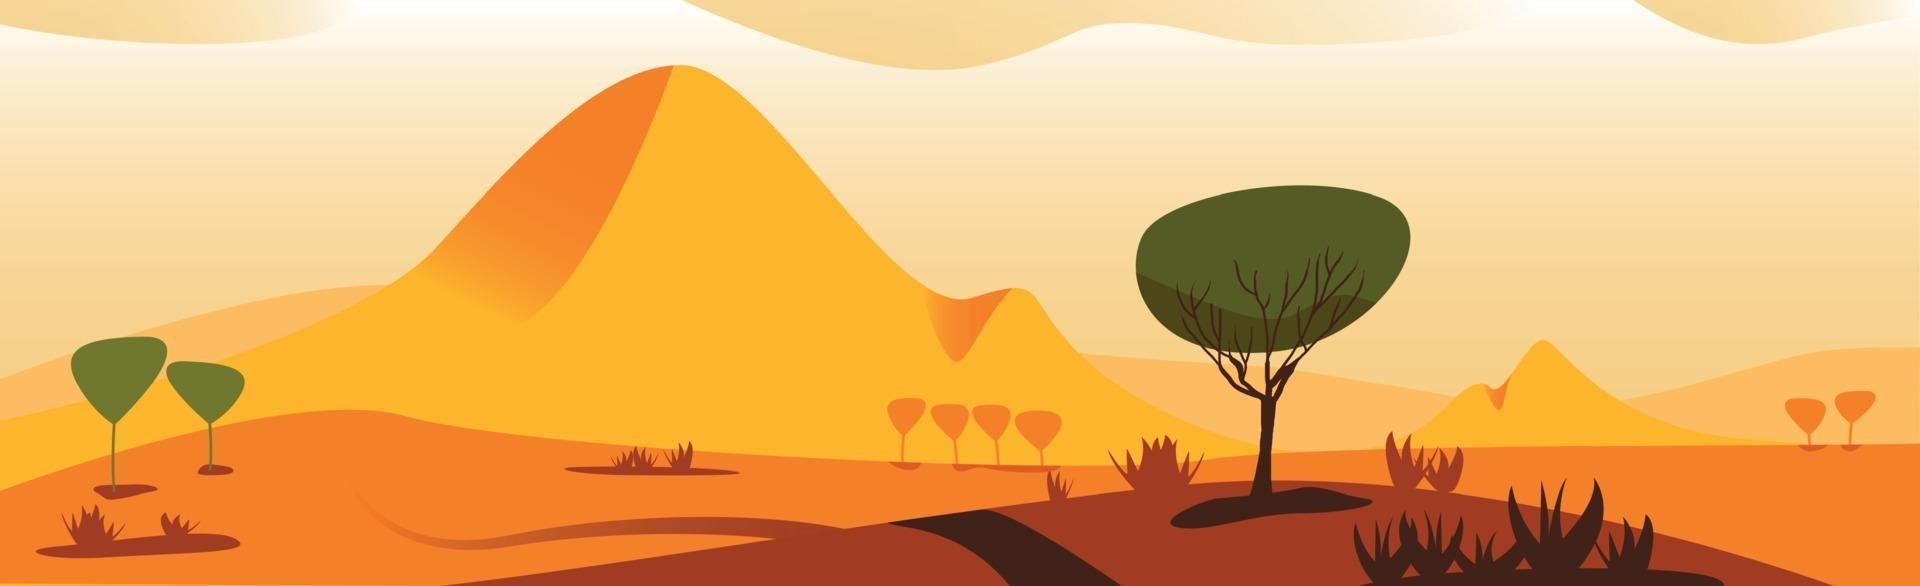 paysage panoramique désert chaud et ensoleillé de la savane - vecteur